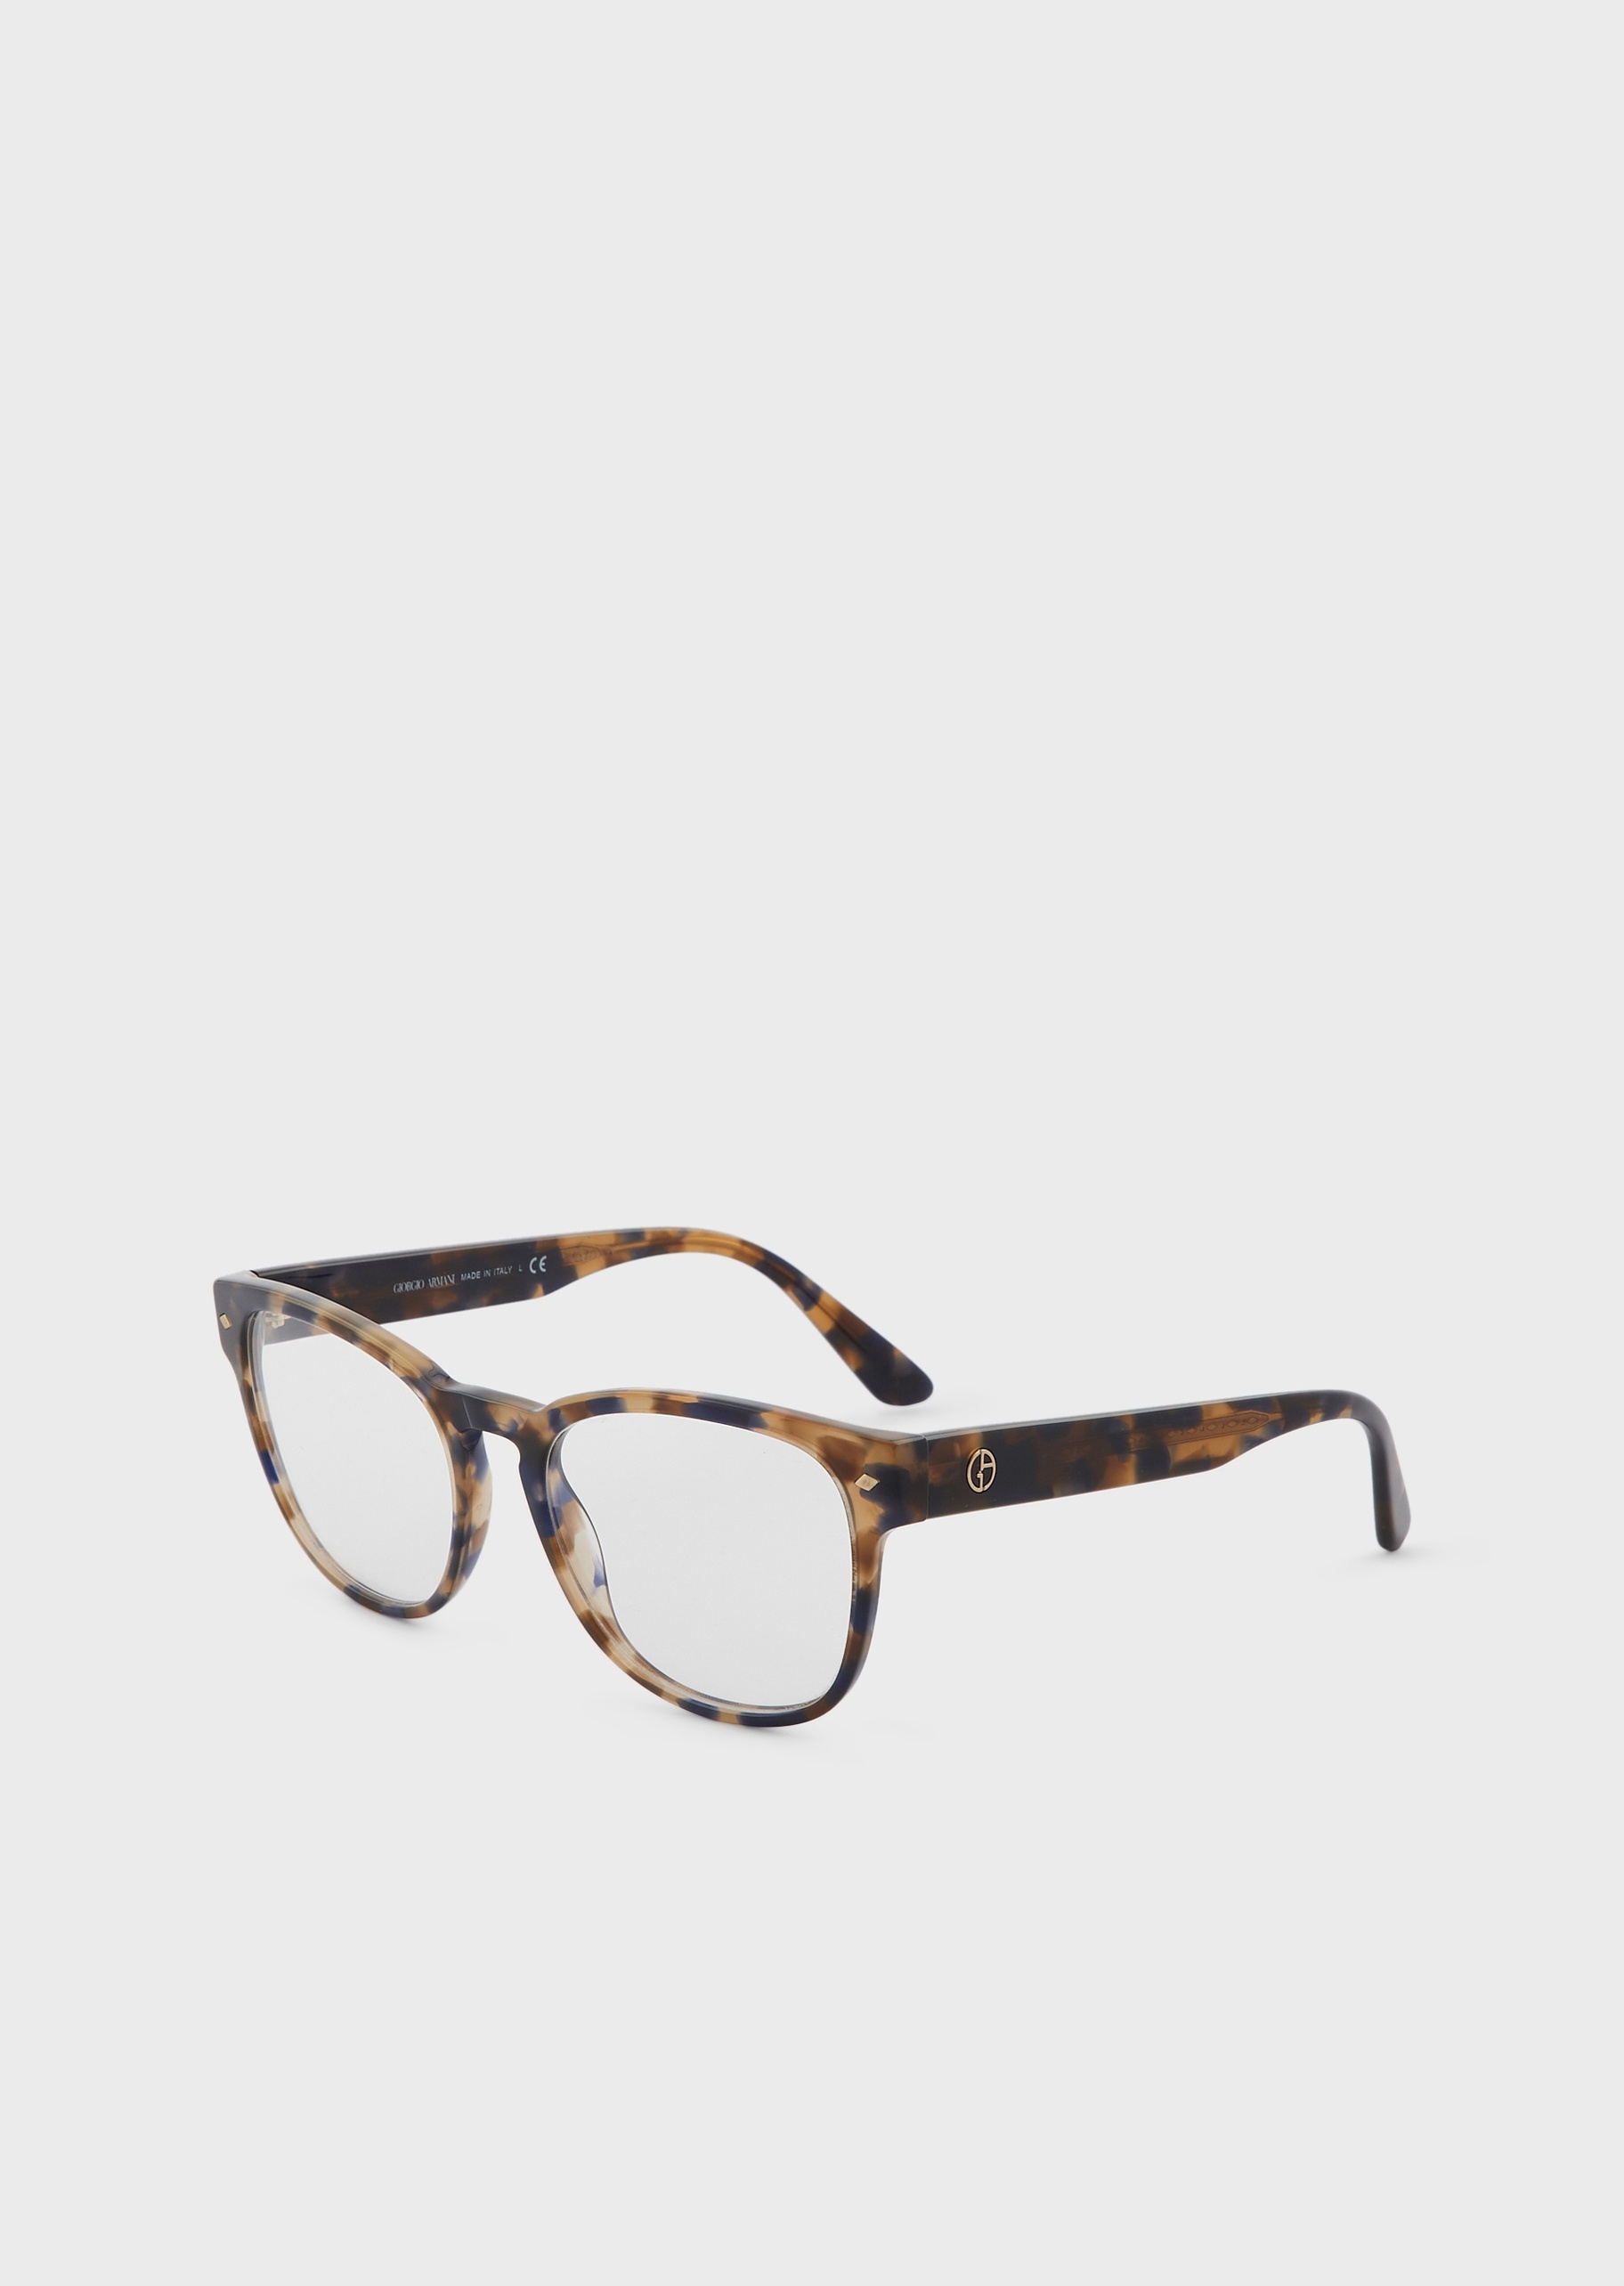 豹纹镜框光学眼镜| 眼镜-男士| GIORGIO ARMANI®中国官网